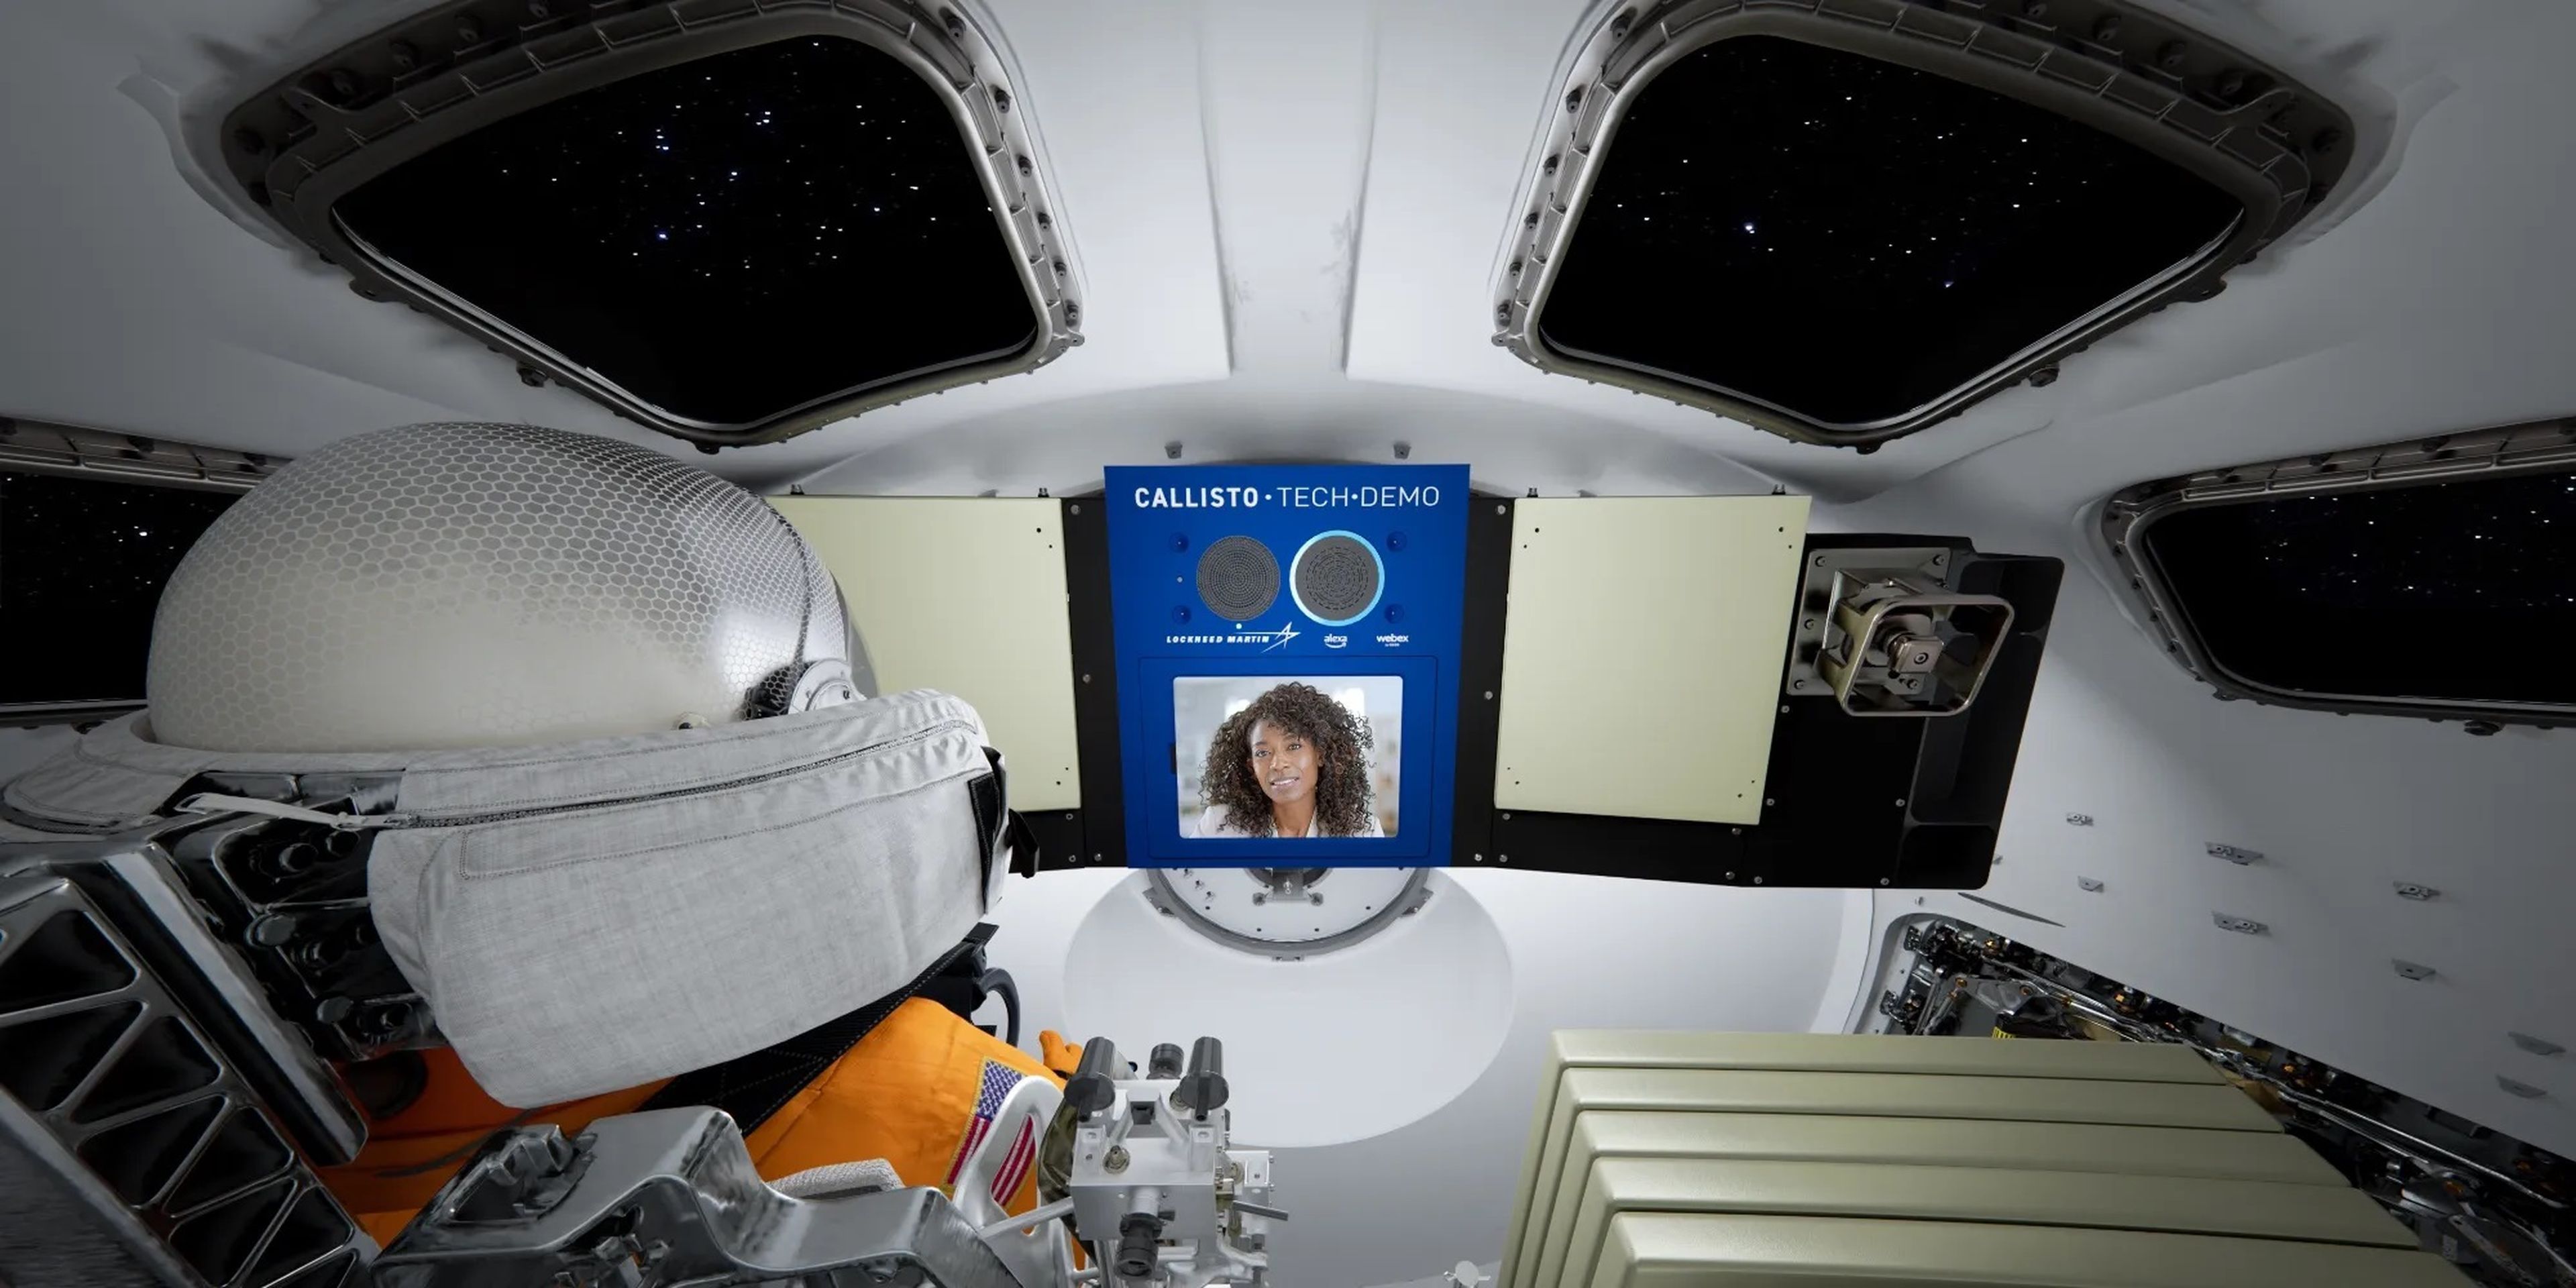 Así puedes enviar tu propio mensaje al iPad de la Artemis I mientras viaja a la Luna